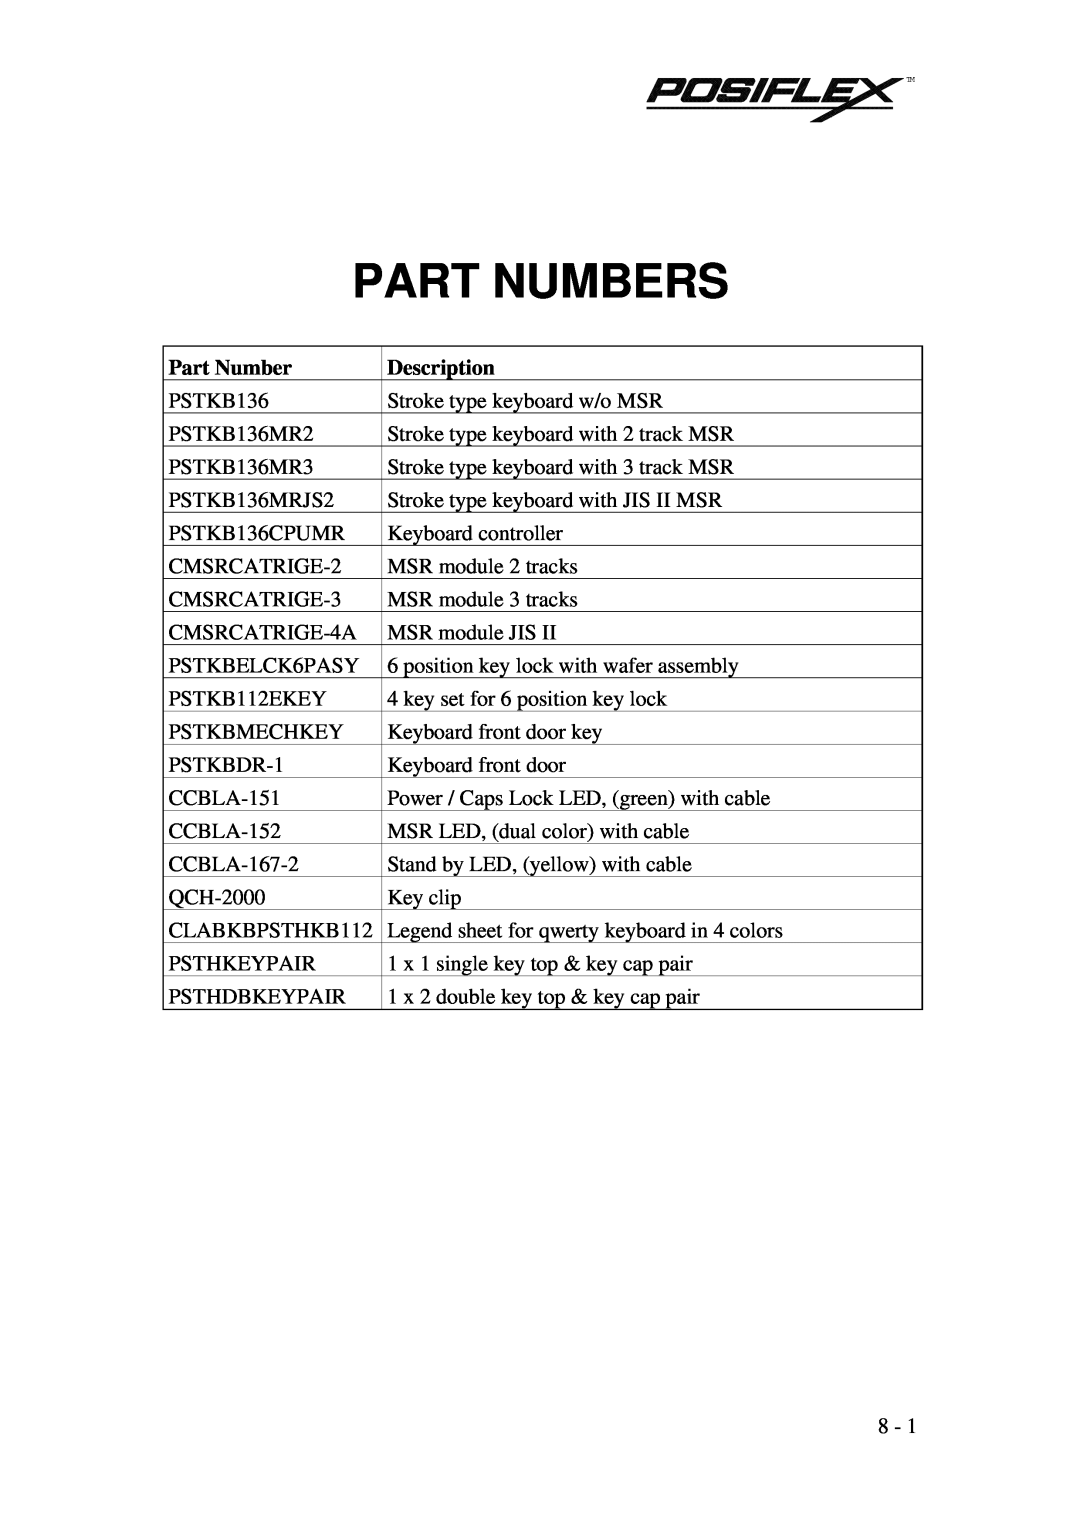 POSIFLEX Business Machines PST KB136 manual Part Numbers, Description 